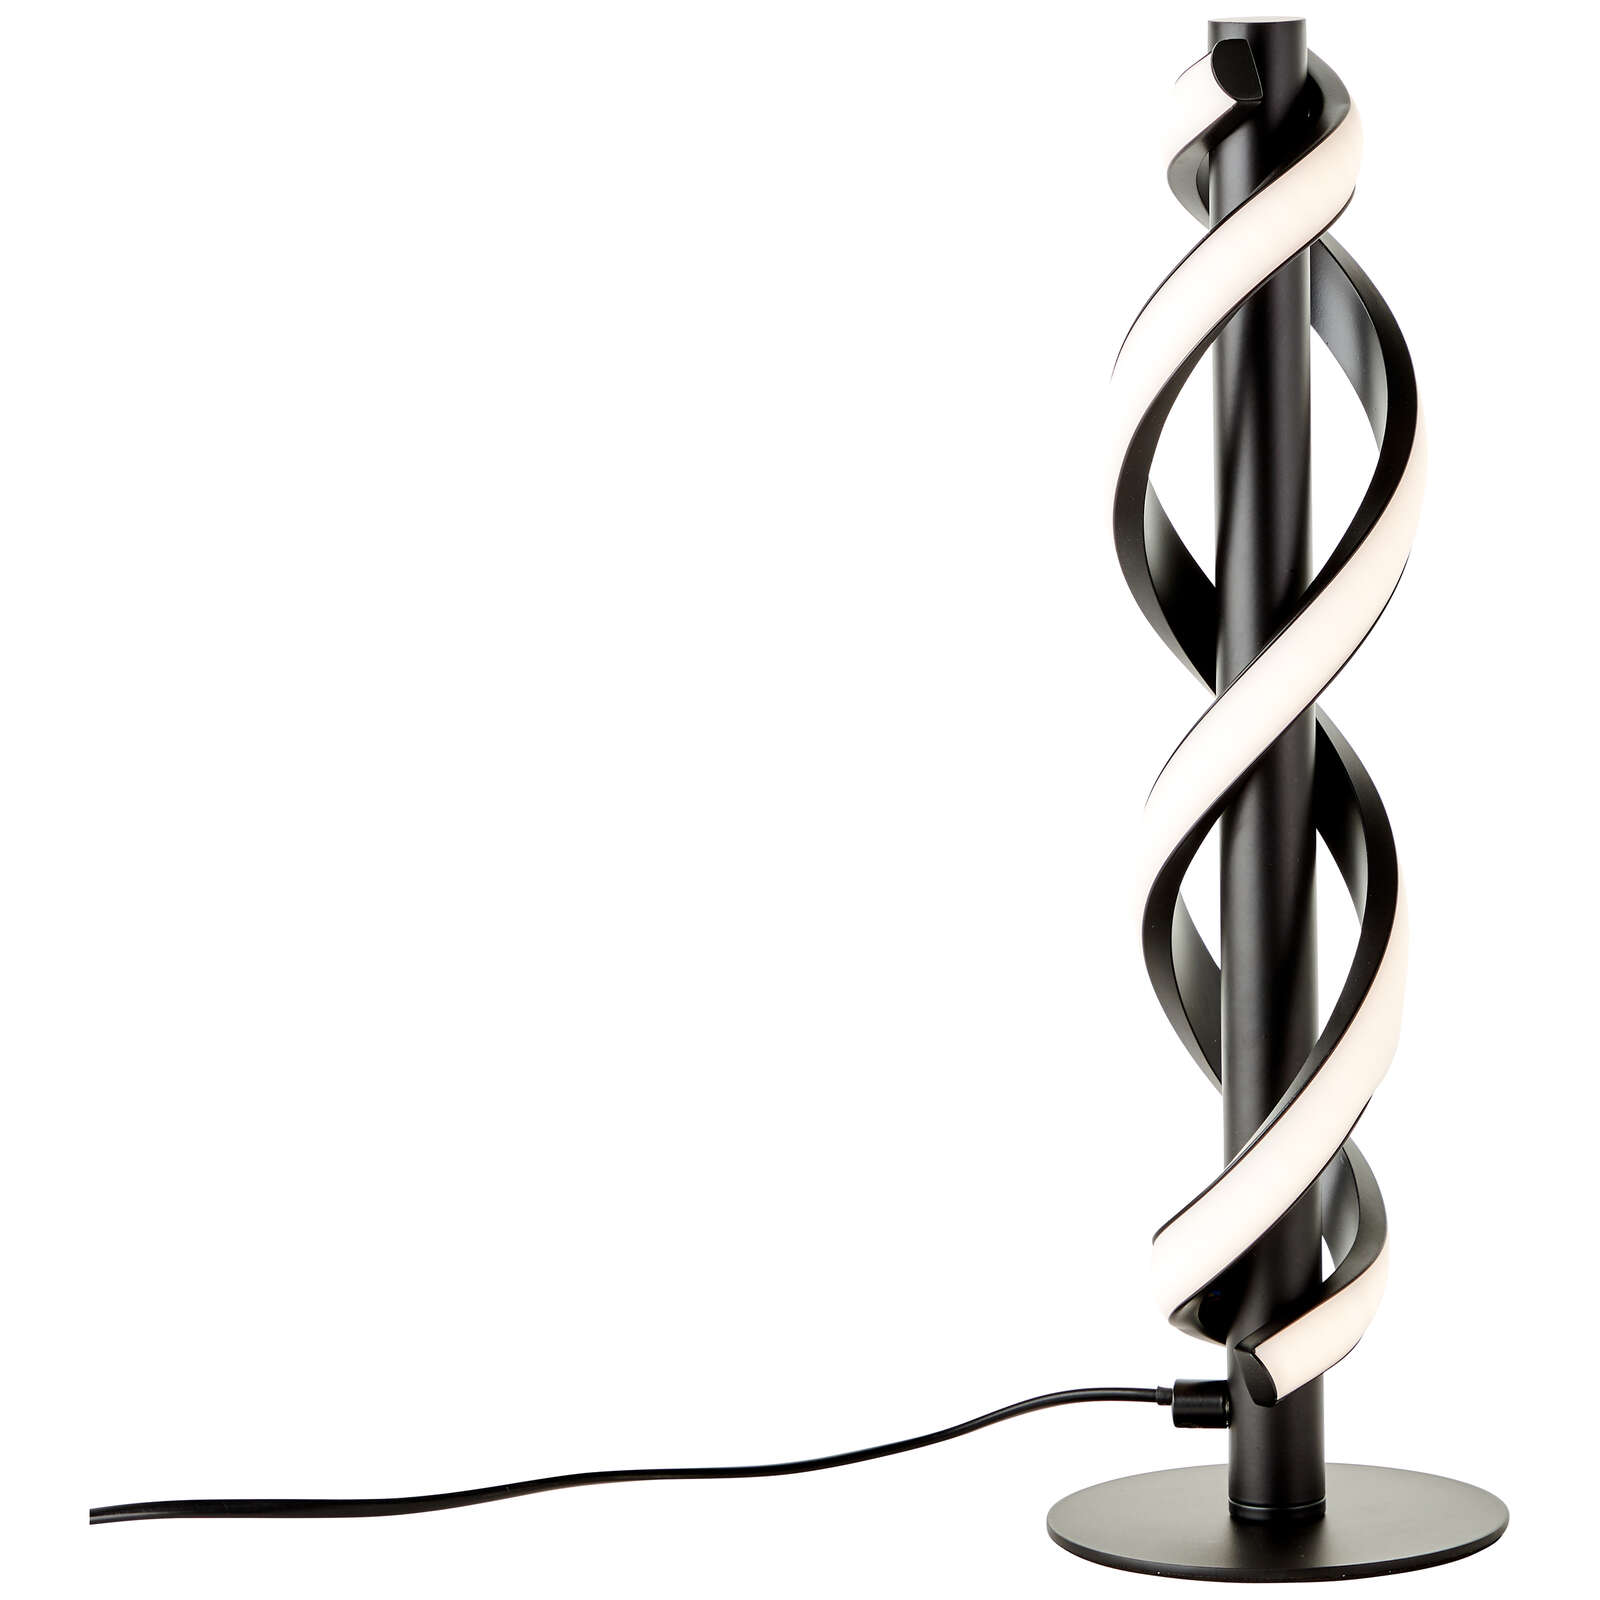             Lampe de table en plastique - Alexander 1 - Noir
        